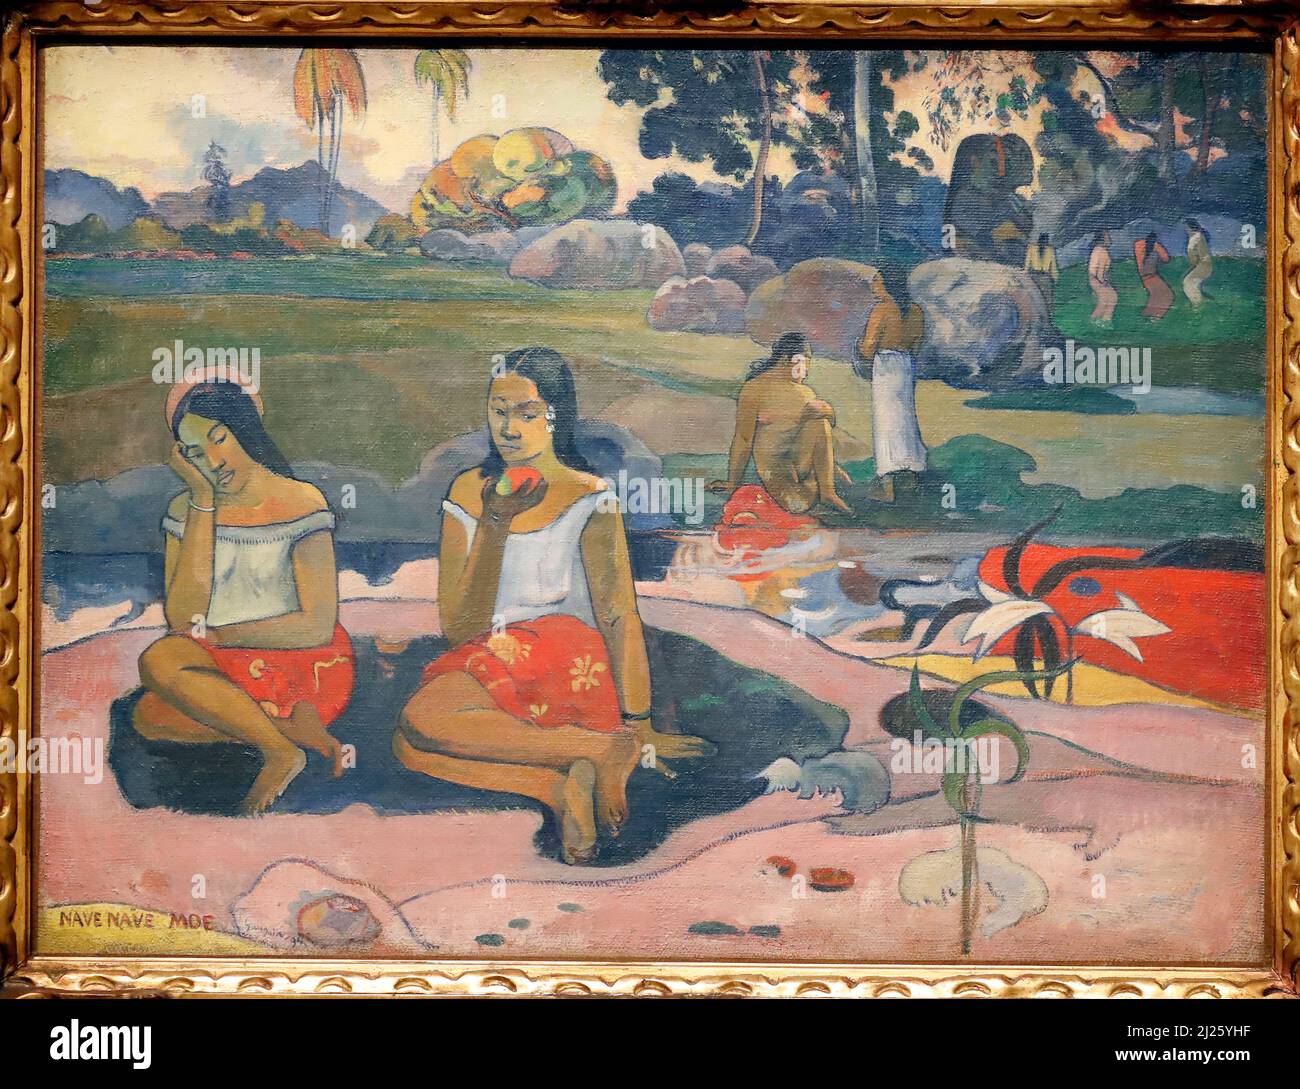 Sacro Sring : sogni dolci. Tahiti 1894. Paul Gauguin ( 1848 - 1903 ). Mostra : icone d'arte moderna della collezione Morozov della Fondazione Foto Stock